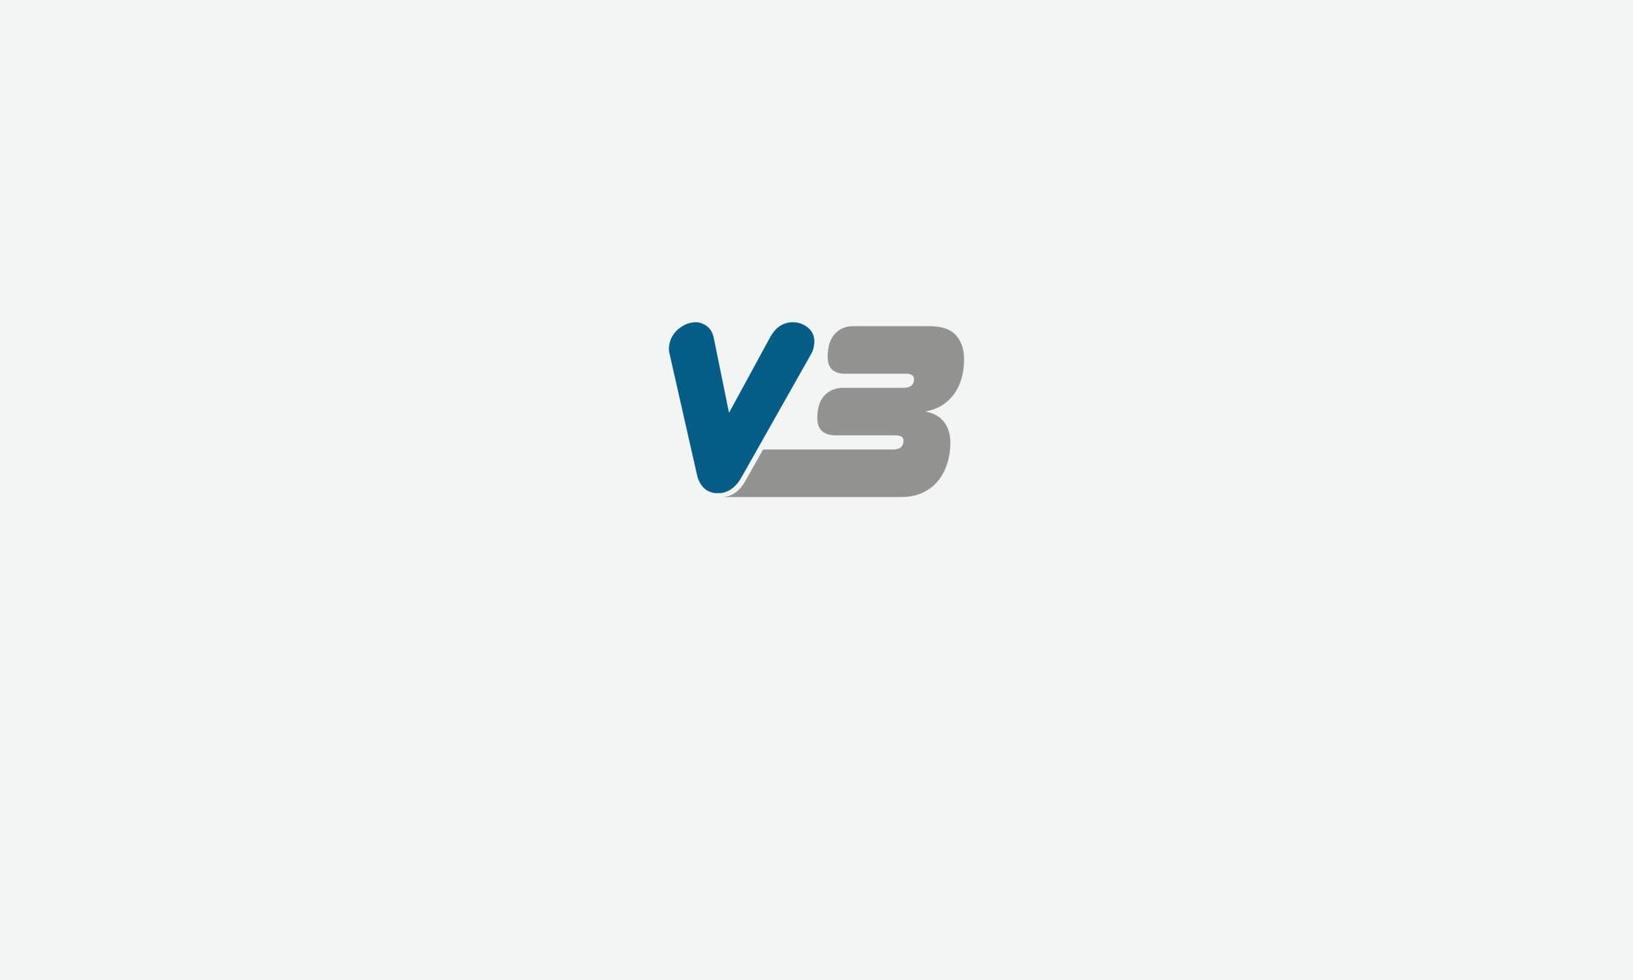 alfabeto letras iniciales monograma logo vb, bv, v y b vector